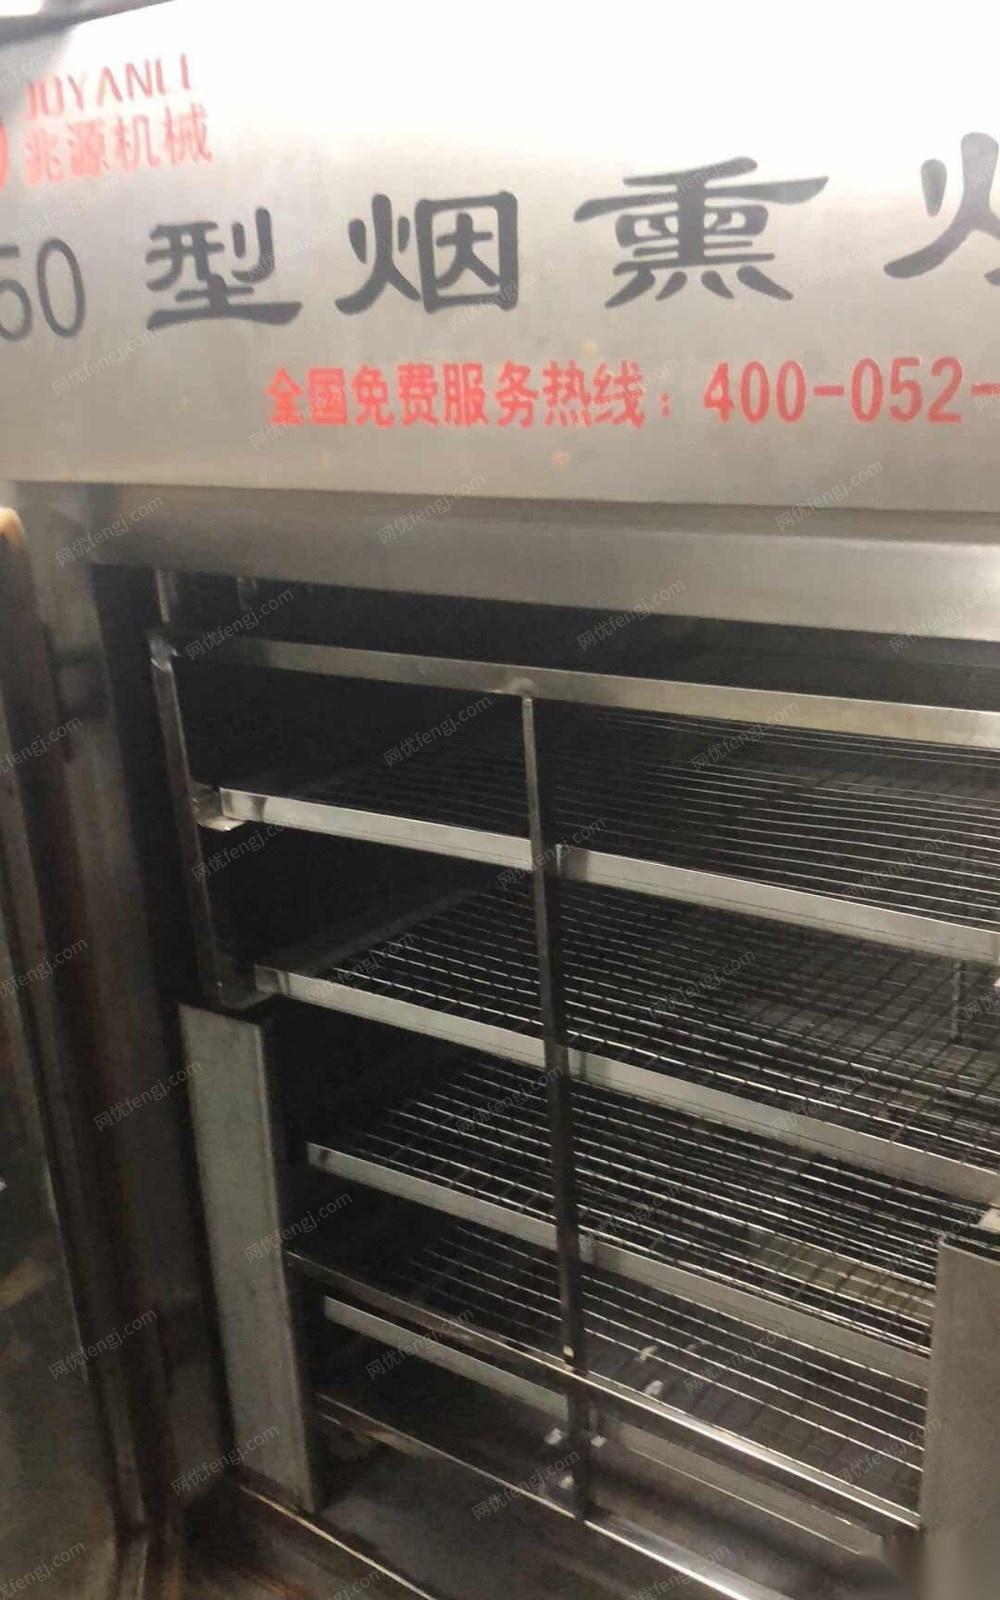 吉林吉林低价出售全新熏烤设备 13000元